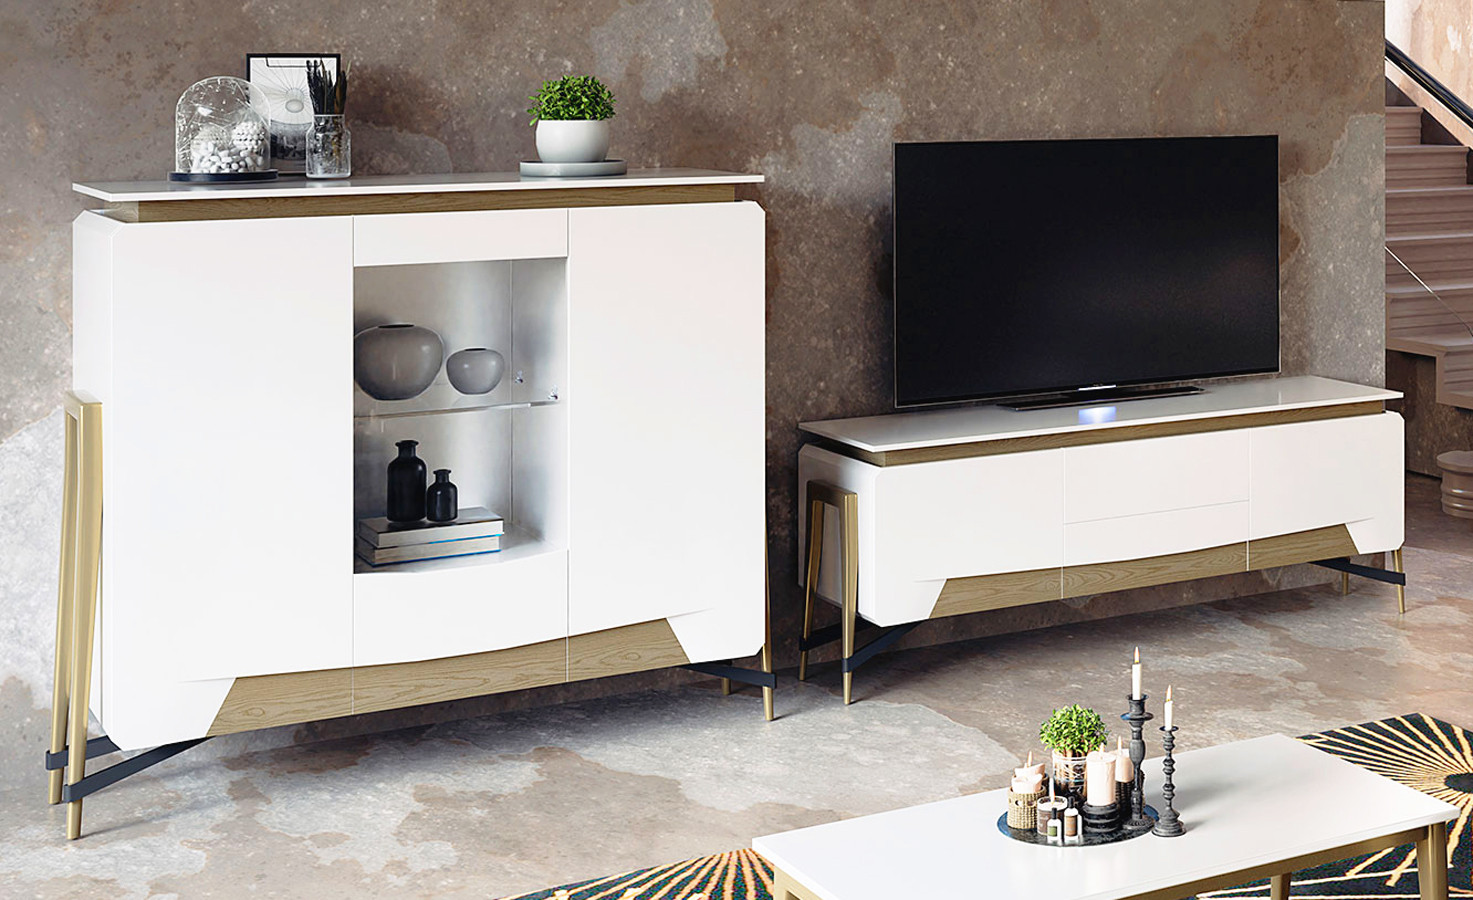 Muebles de diseño para salones comedores con mobiliario de calidad